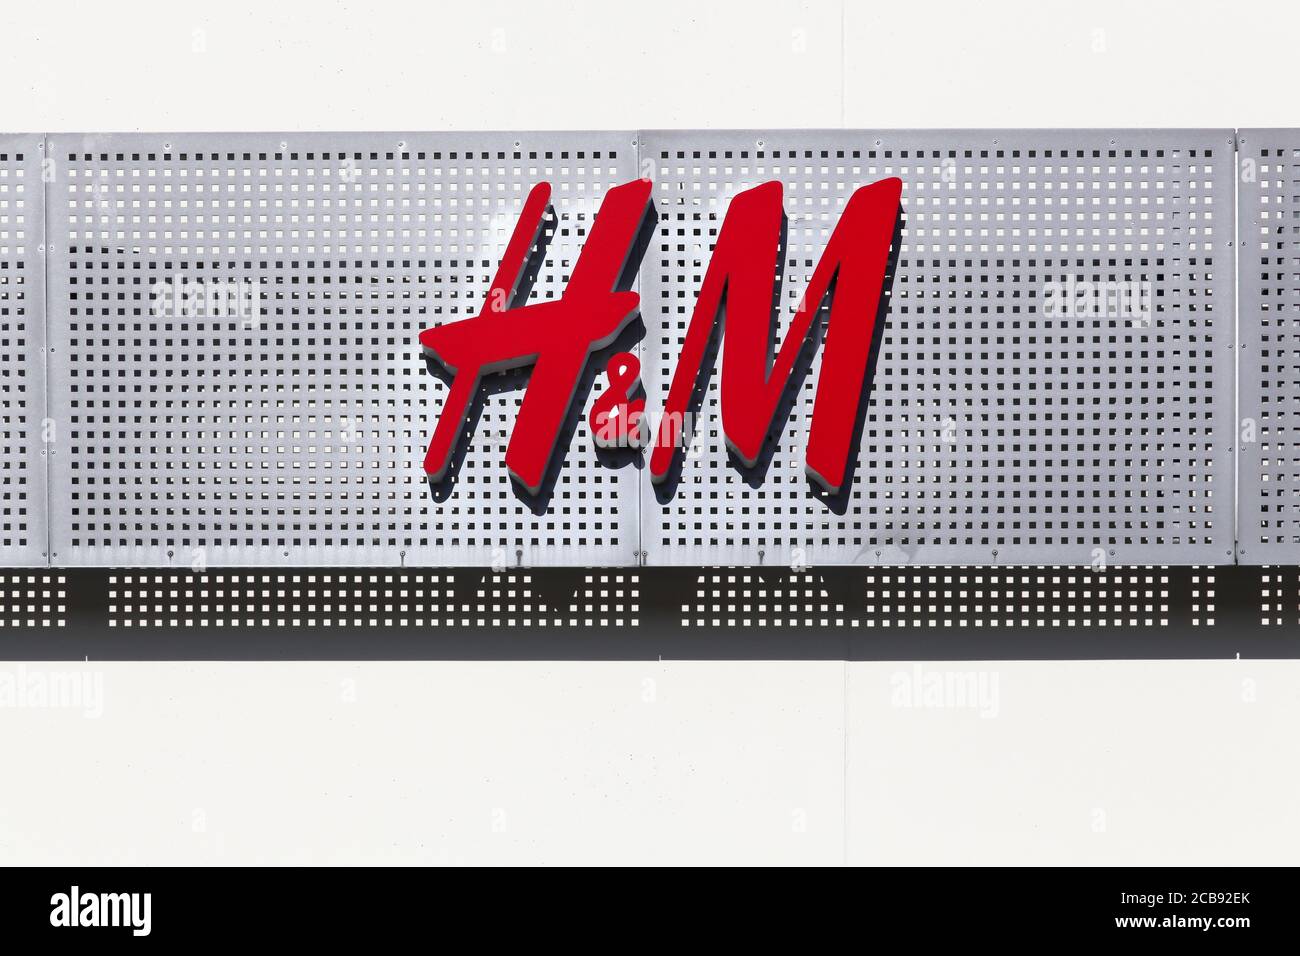 Randers, Dänemark - 5. Mai 2018: H & M Logo auf einer Fassade. H & M ist ein schwedisches multinationales Bekleidungsunternehmen, das für seine schnelle Modebekleidung bekannt ist Stockfoto